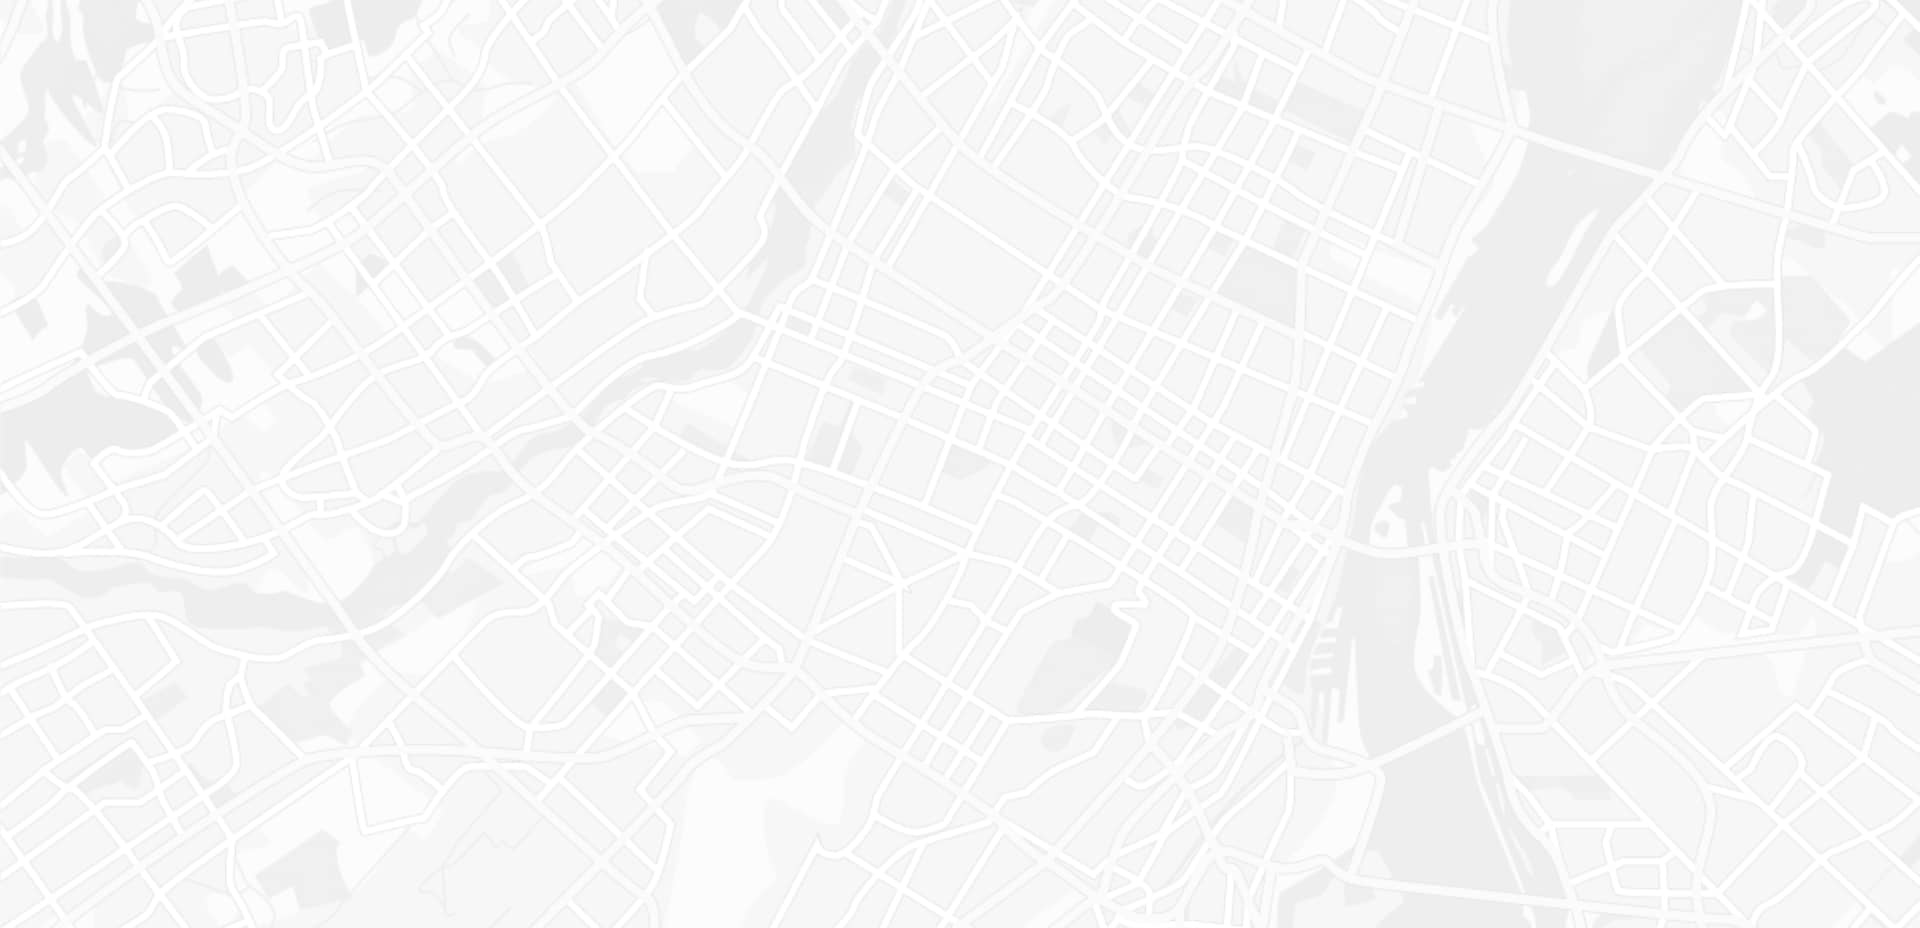 map de montréal et environs